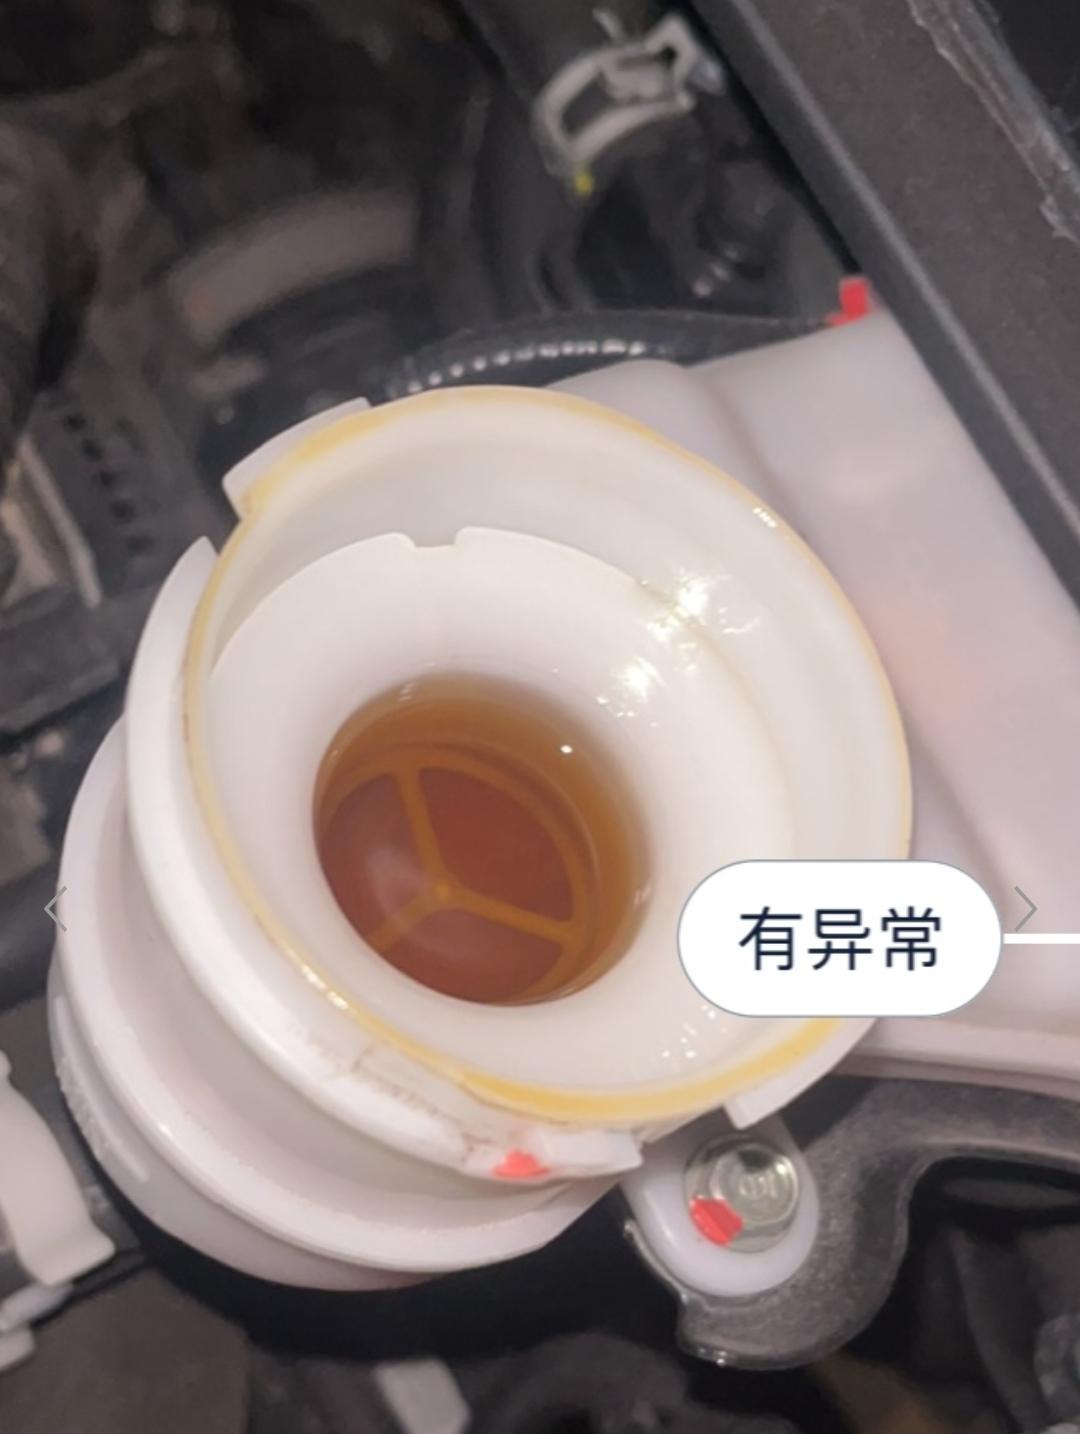 本田CR-V 检查的时候说是刹车油浑浊要更换，咱也不懂，是真的吗？